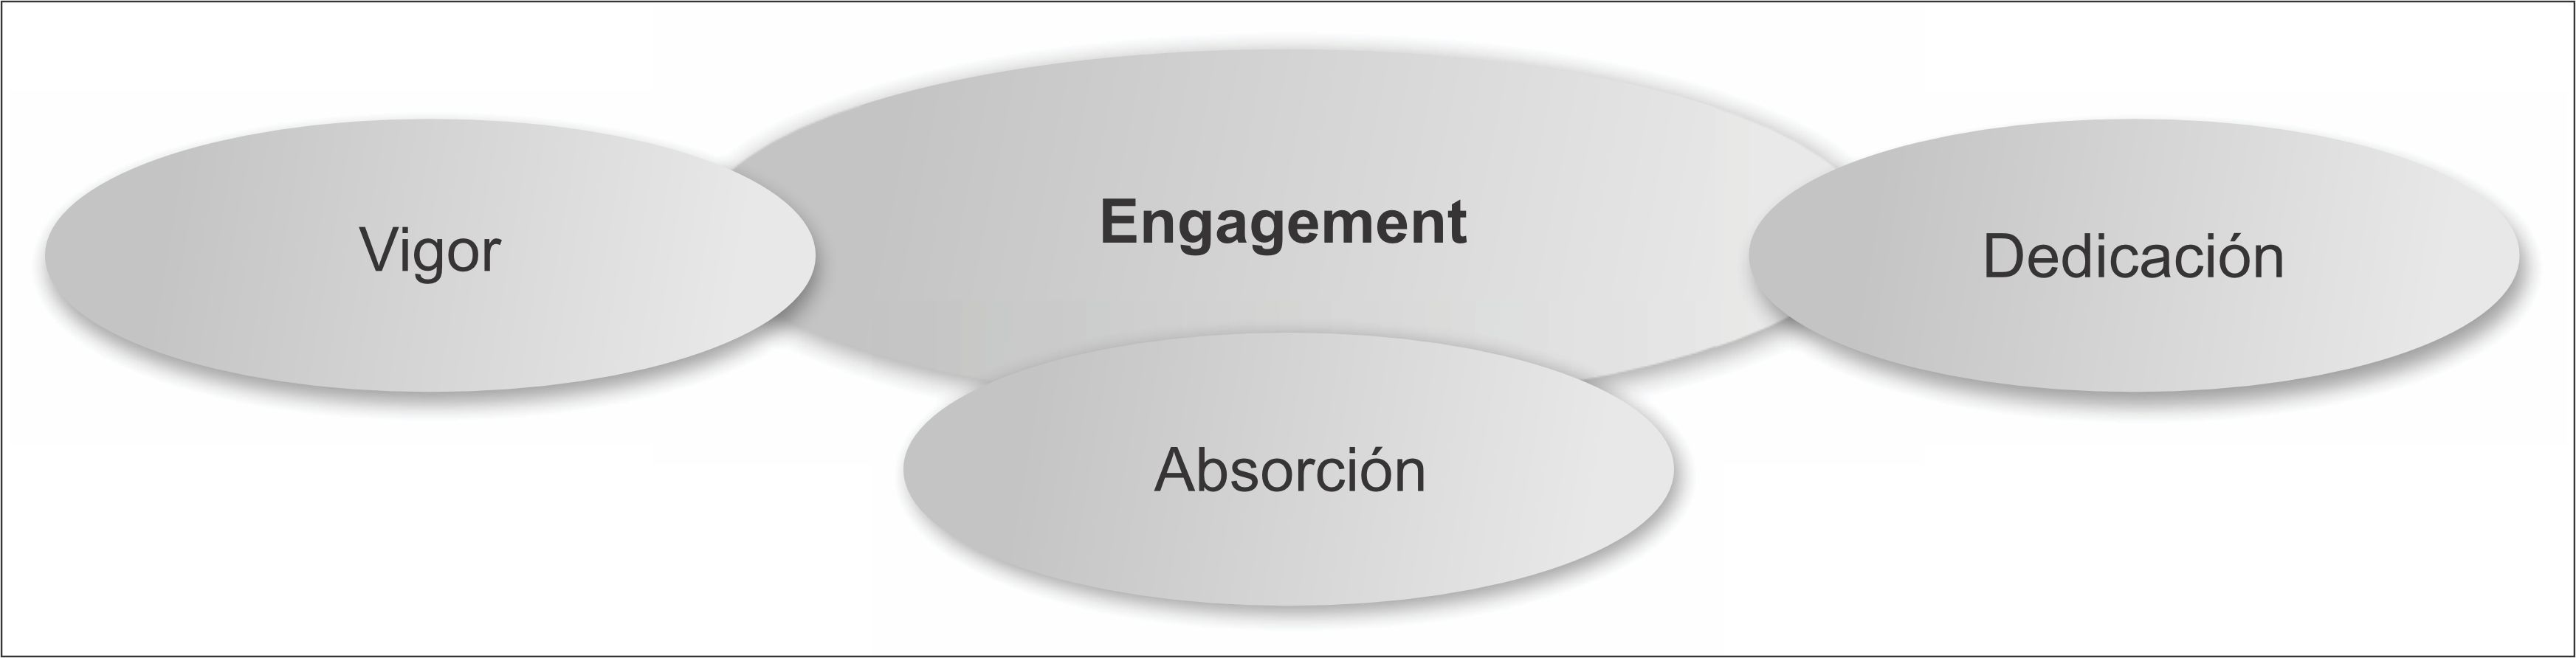 Modelo del engagement de Schaufeli y otros